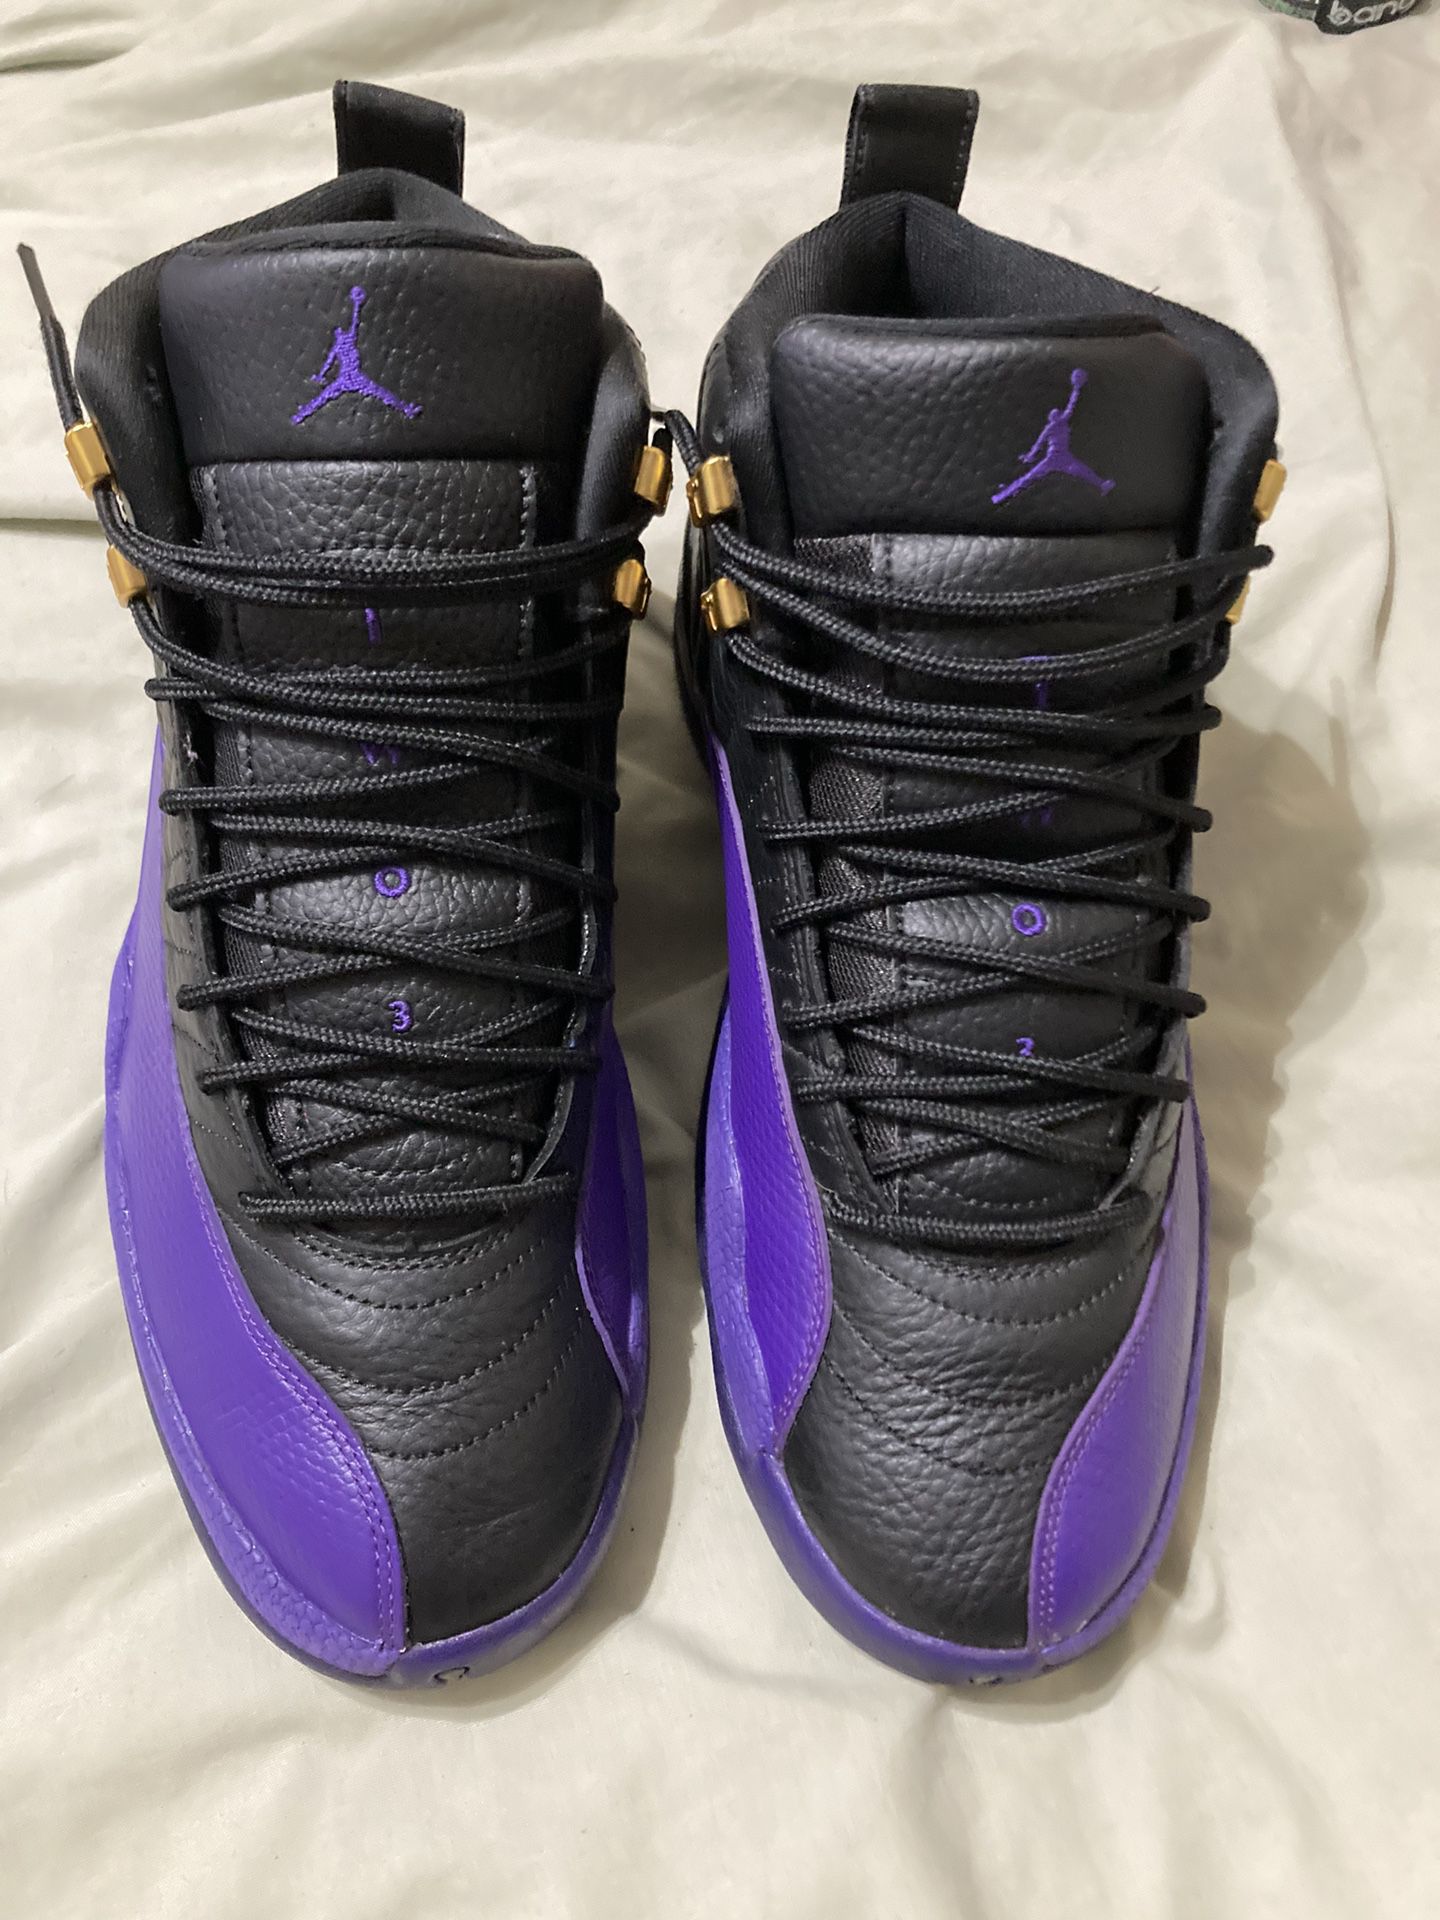 Jordan 12 field, purple